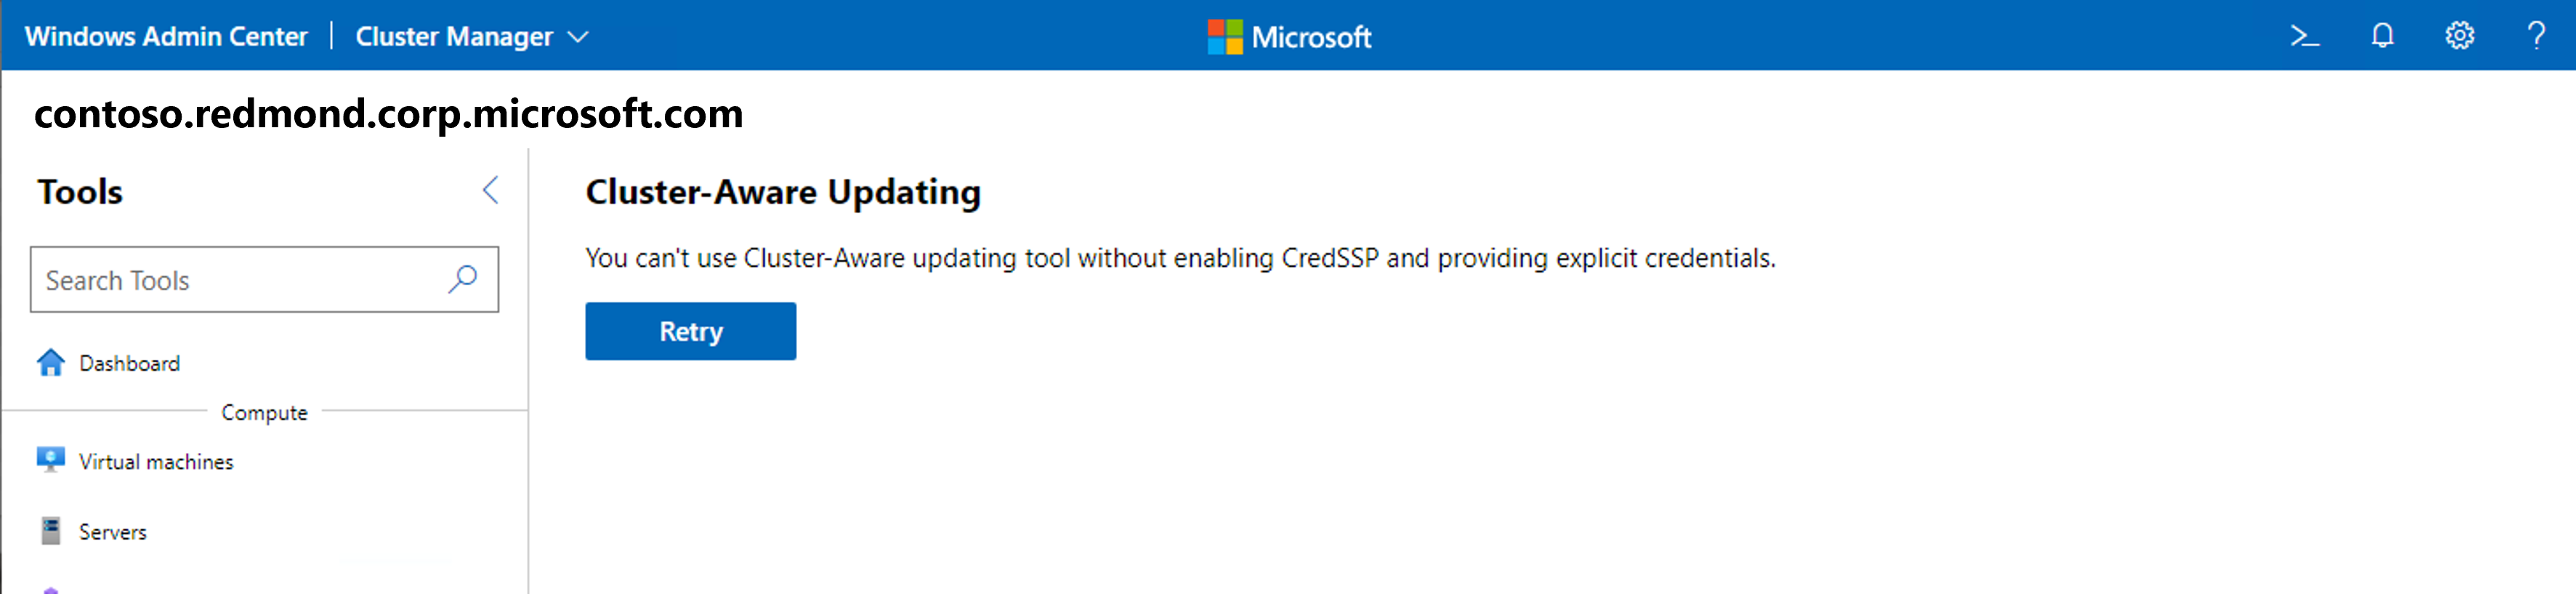 Screenshot des Updates-Tools mit Cluster-fähiger Aktualisierung mit „CRED S S P“-Fehler in Windows Admin Center.